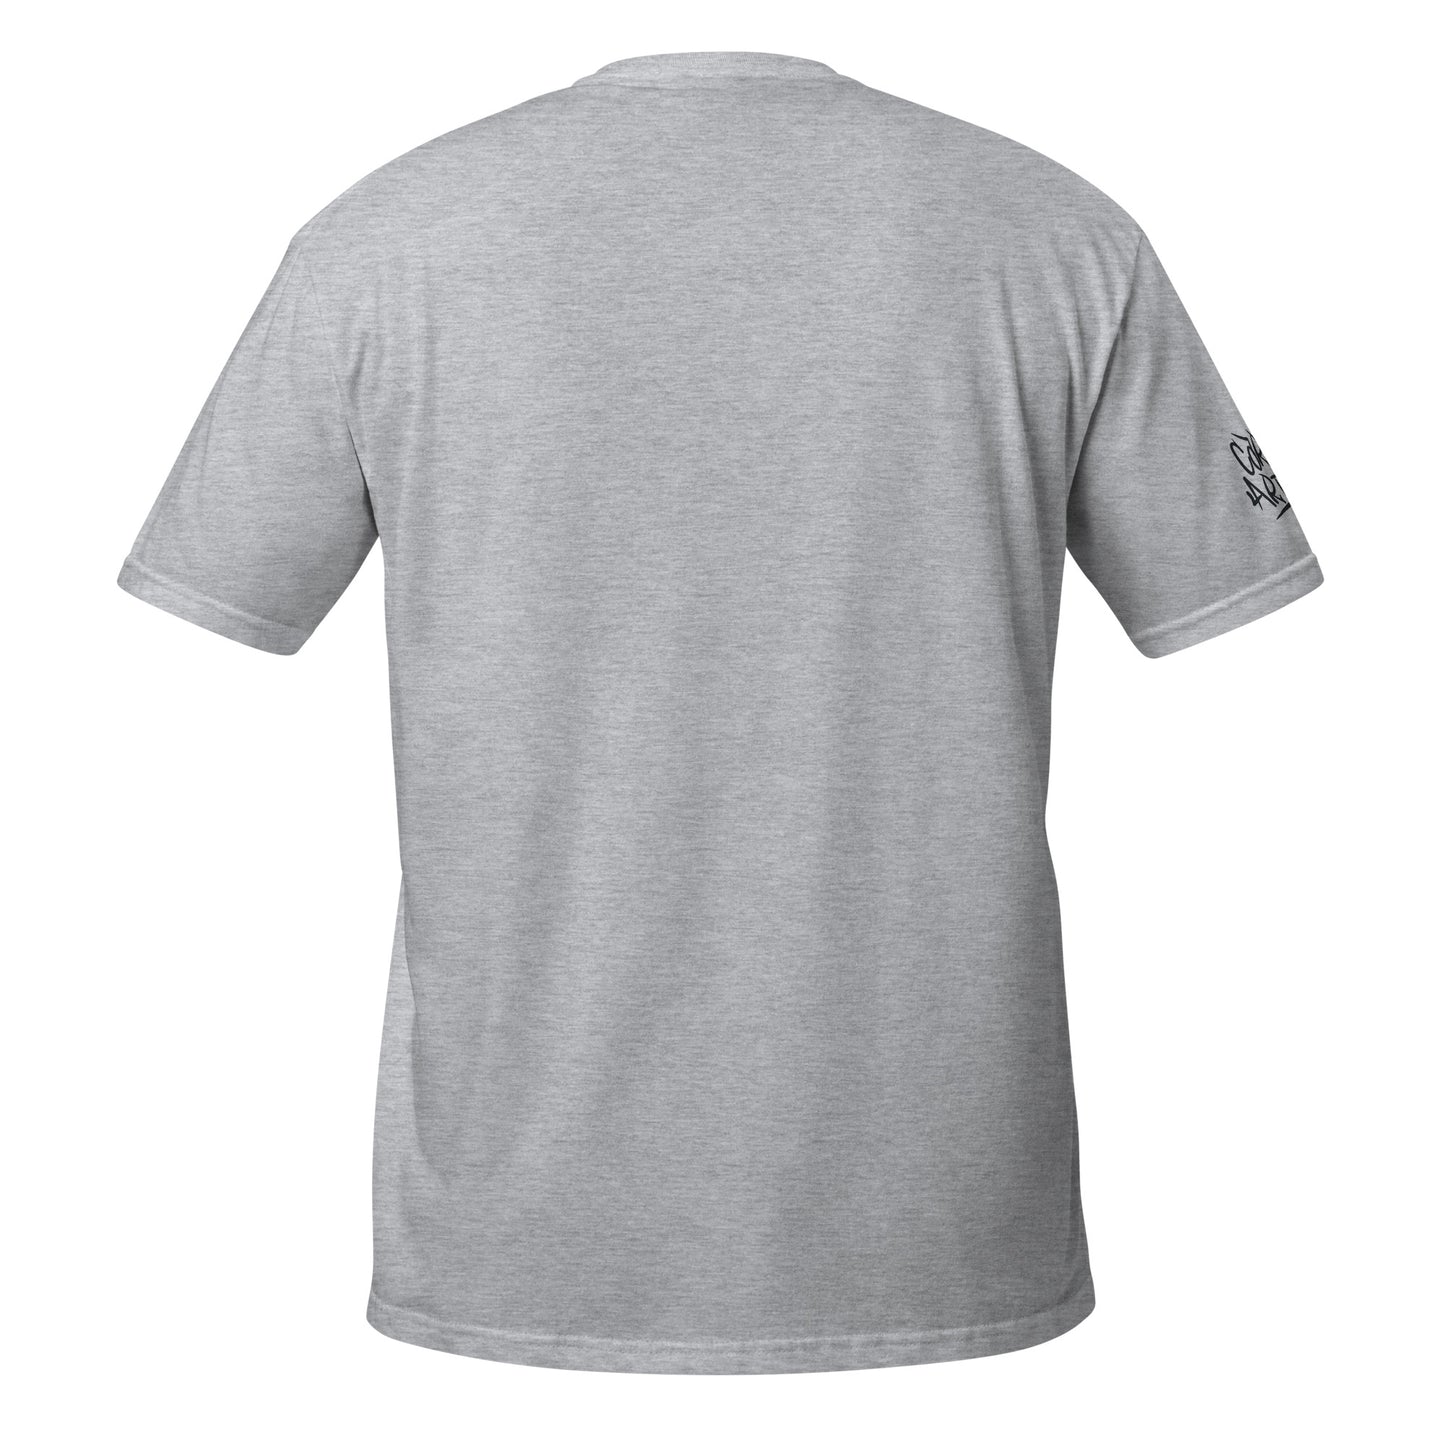 Heart Warrior Short-Sleeve Unisex T-Shirt